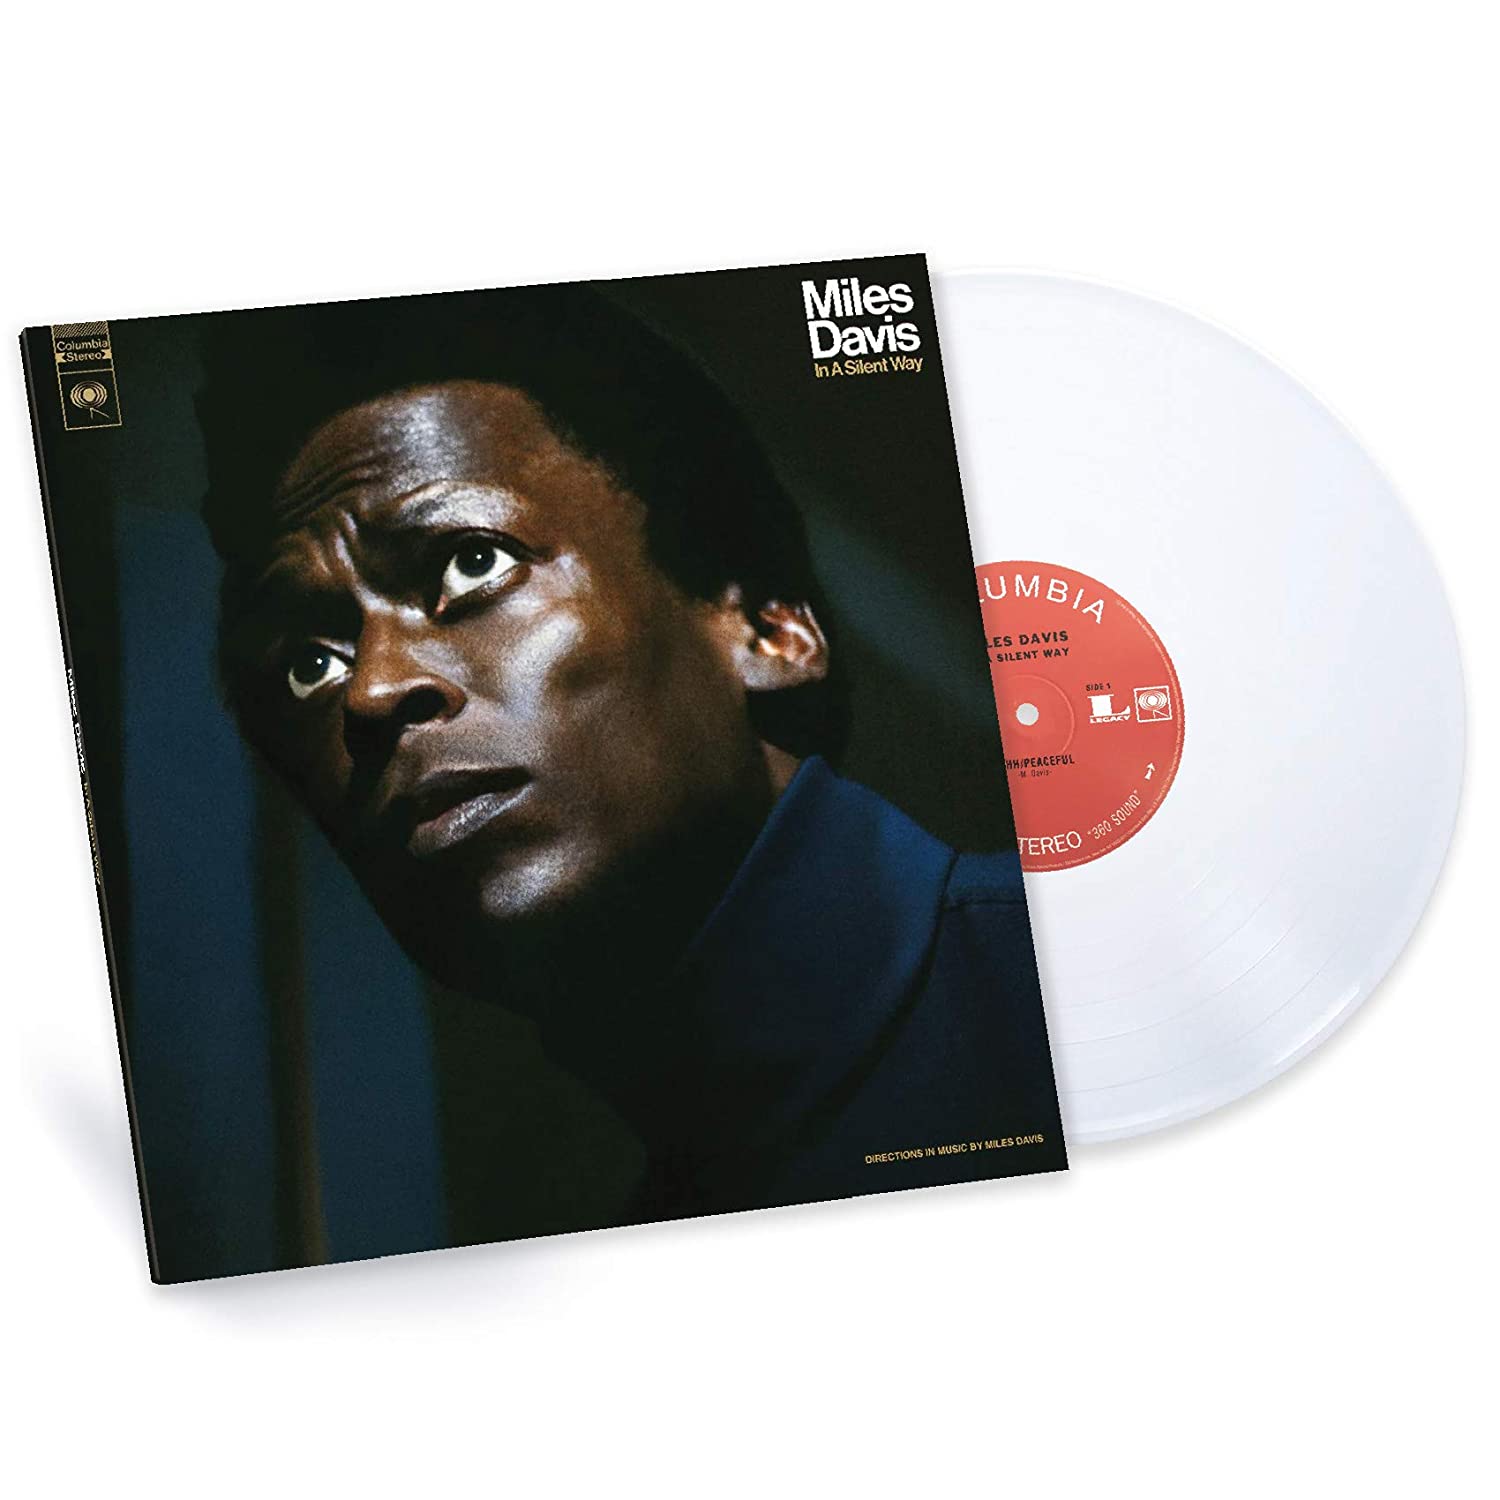 [DAMAGED] Miles Davis - In A Silent Way [Import] [White Vinyl]